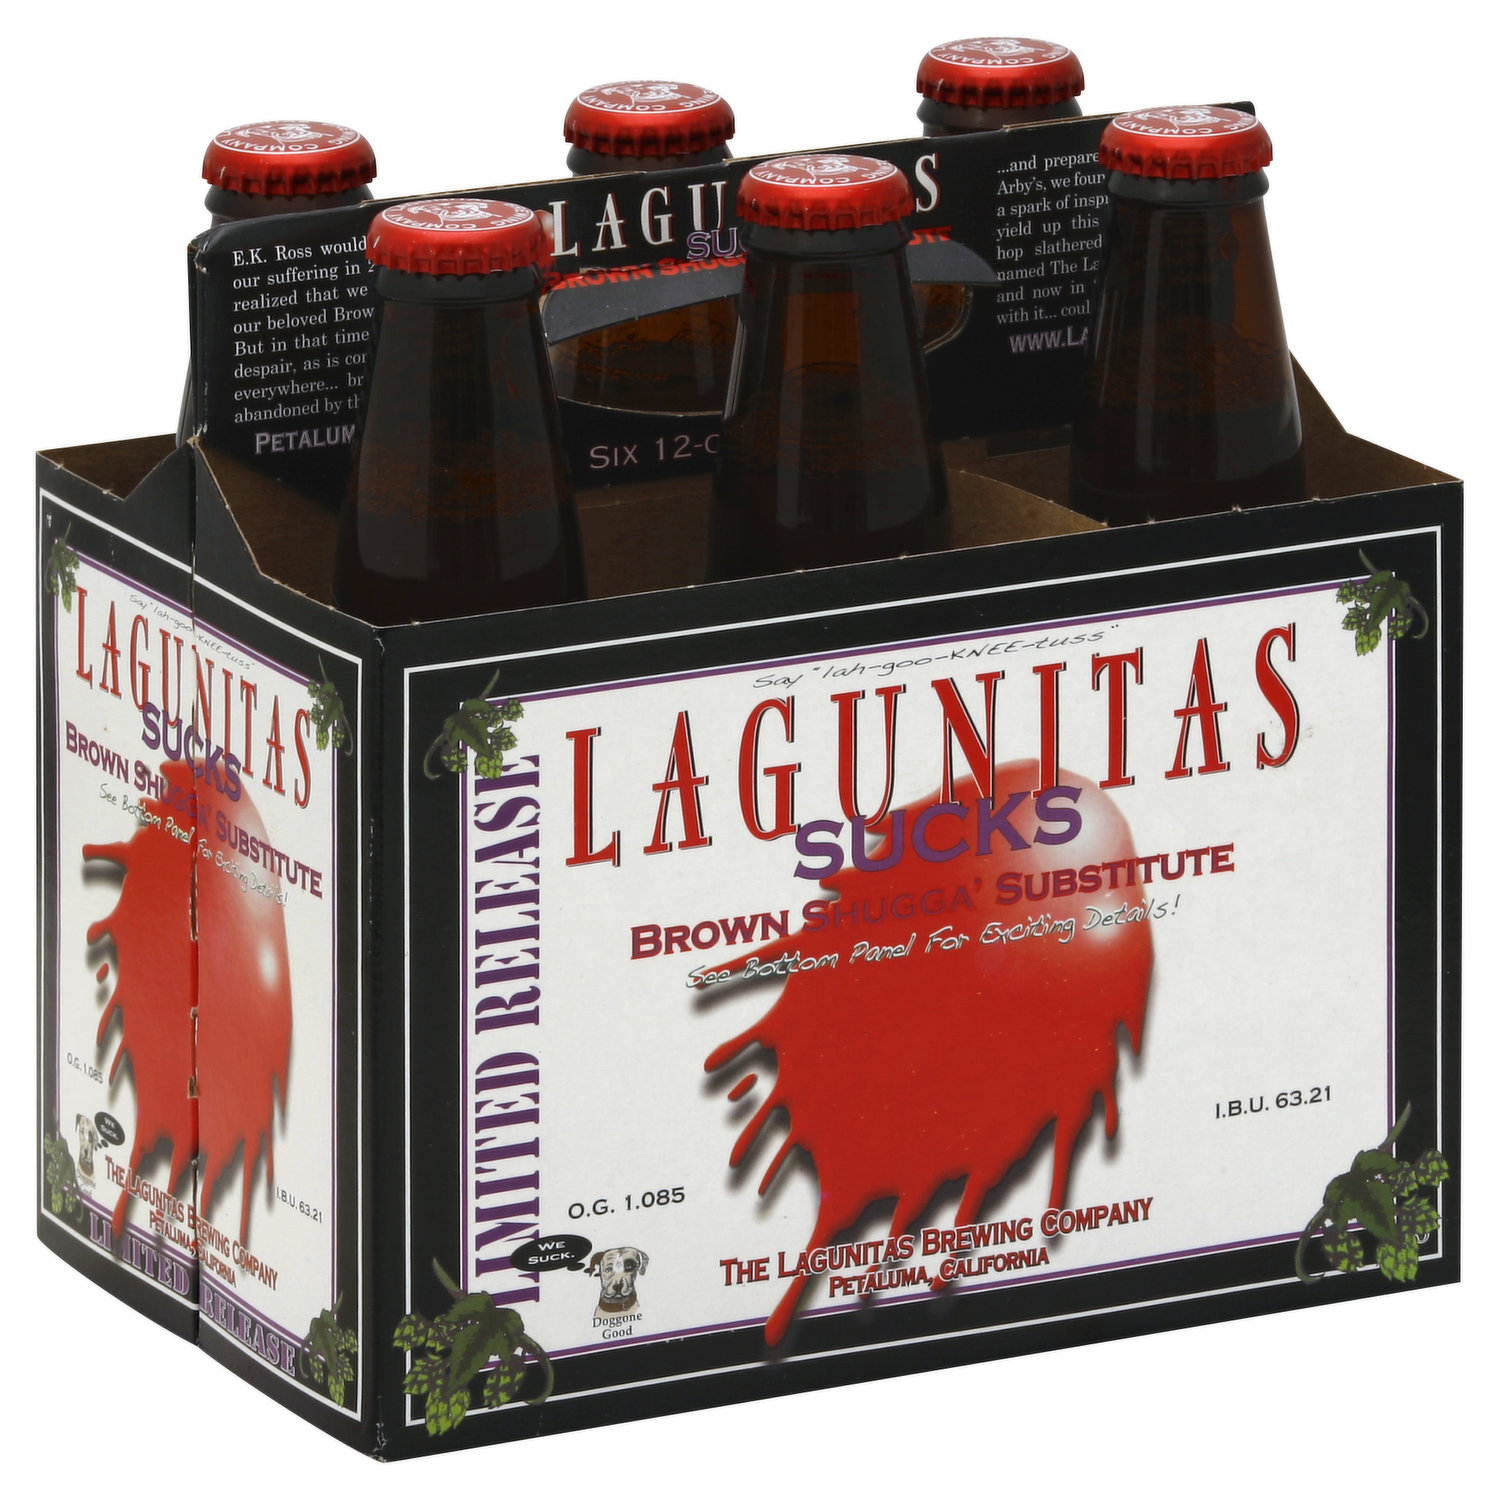 Lagunitas Ale, Brown Shugga\' Substitute, Sucks, Limited Release, 6 Each